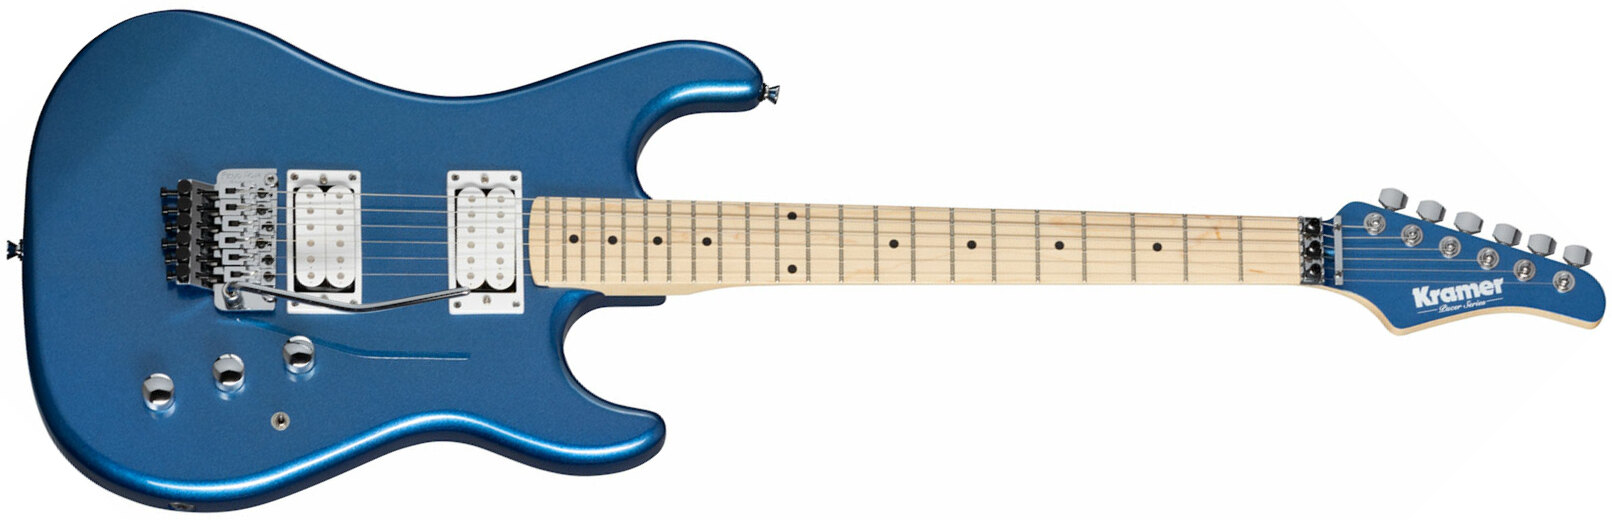 Kramer Pacer Classic 2h Fr Mn - Radio Blue Metallic - Elektrische gitaar in Str-vorm - Main picture